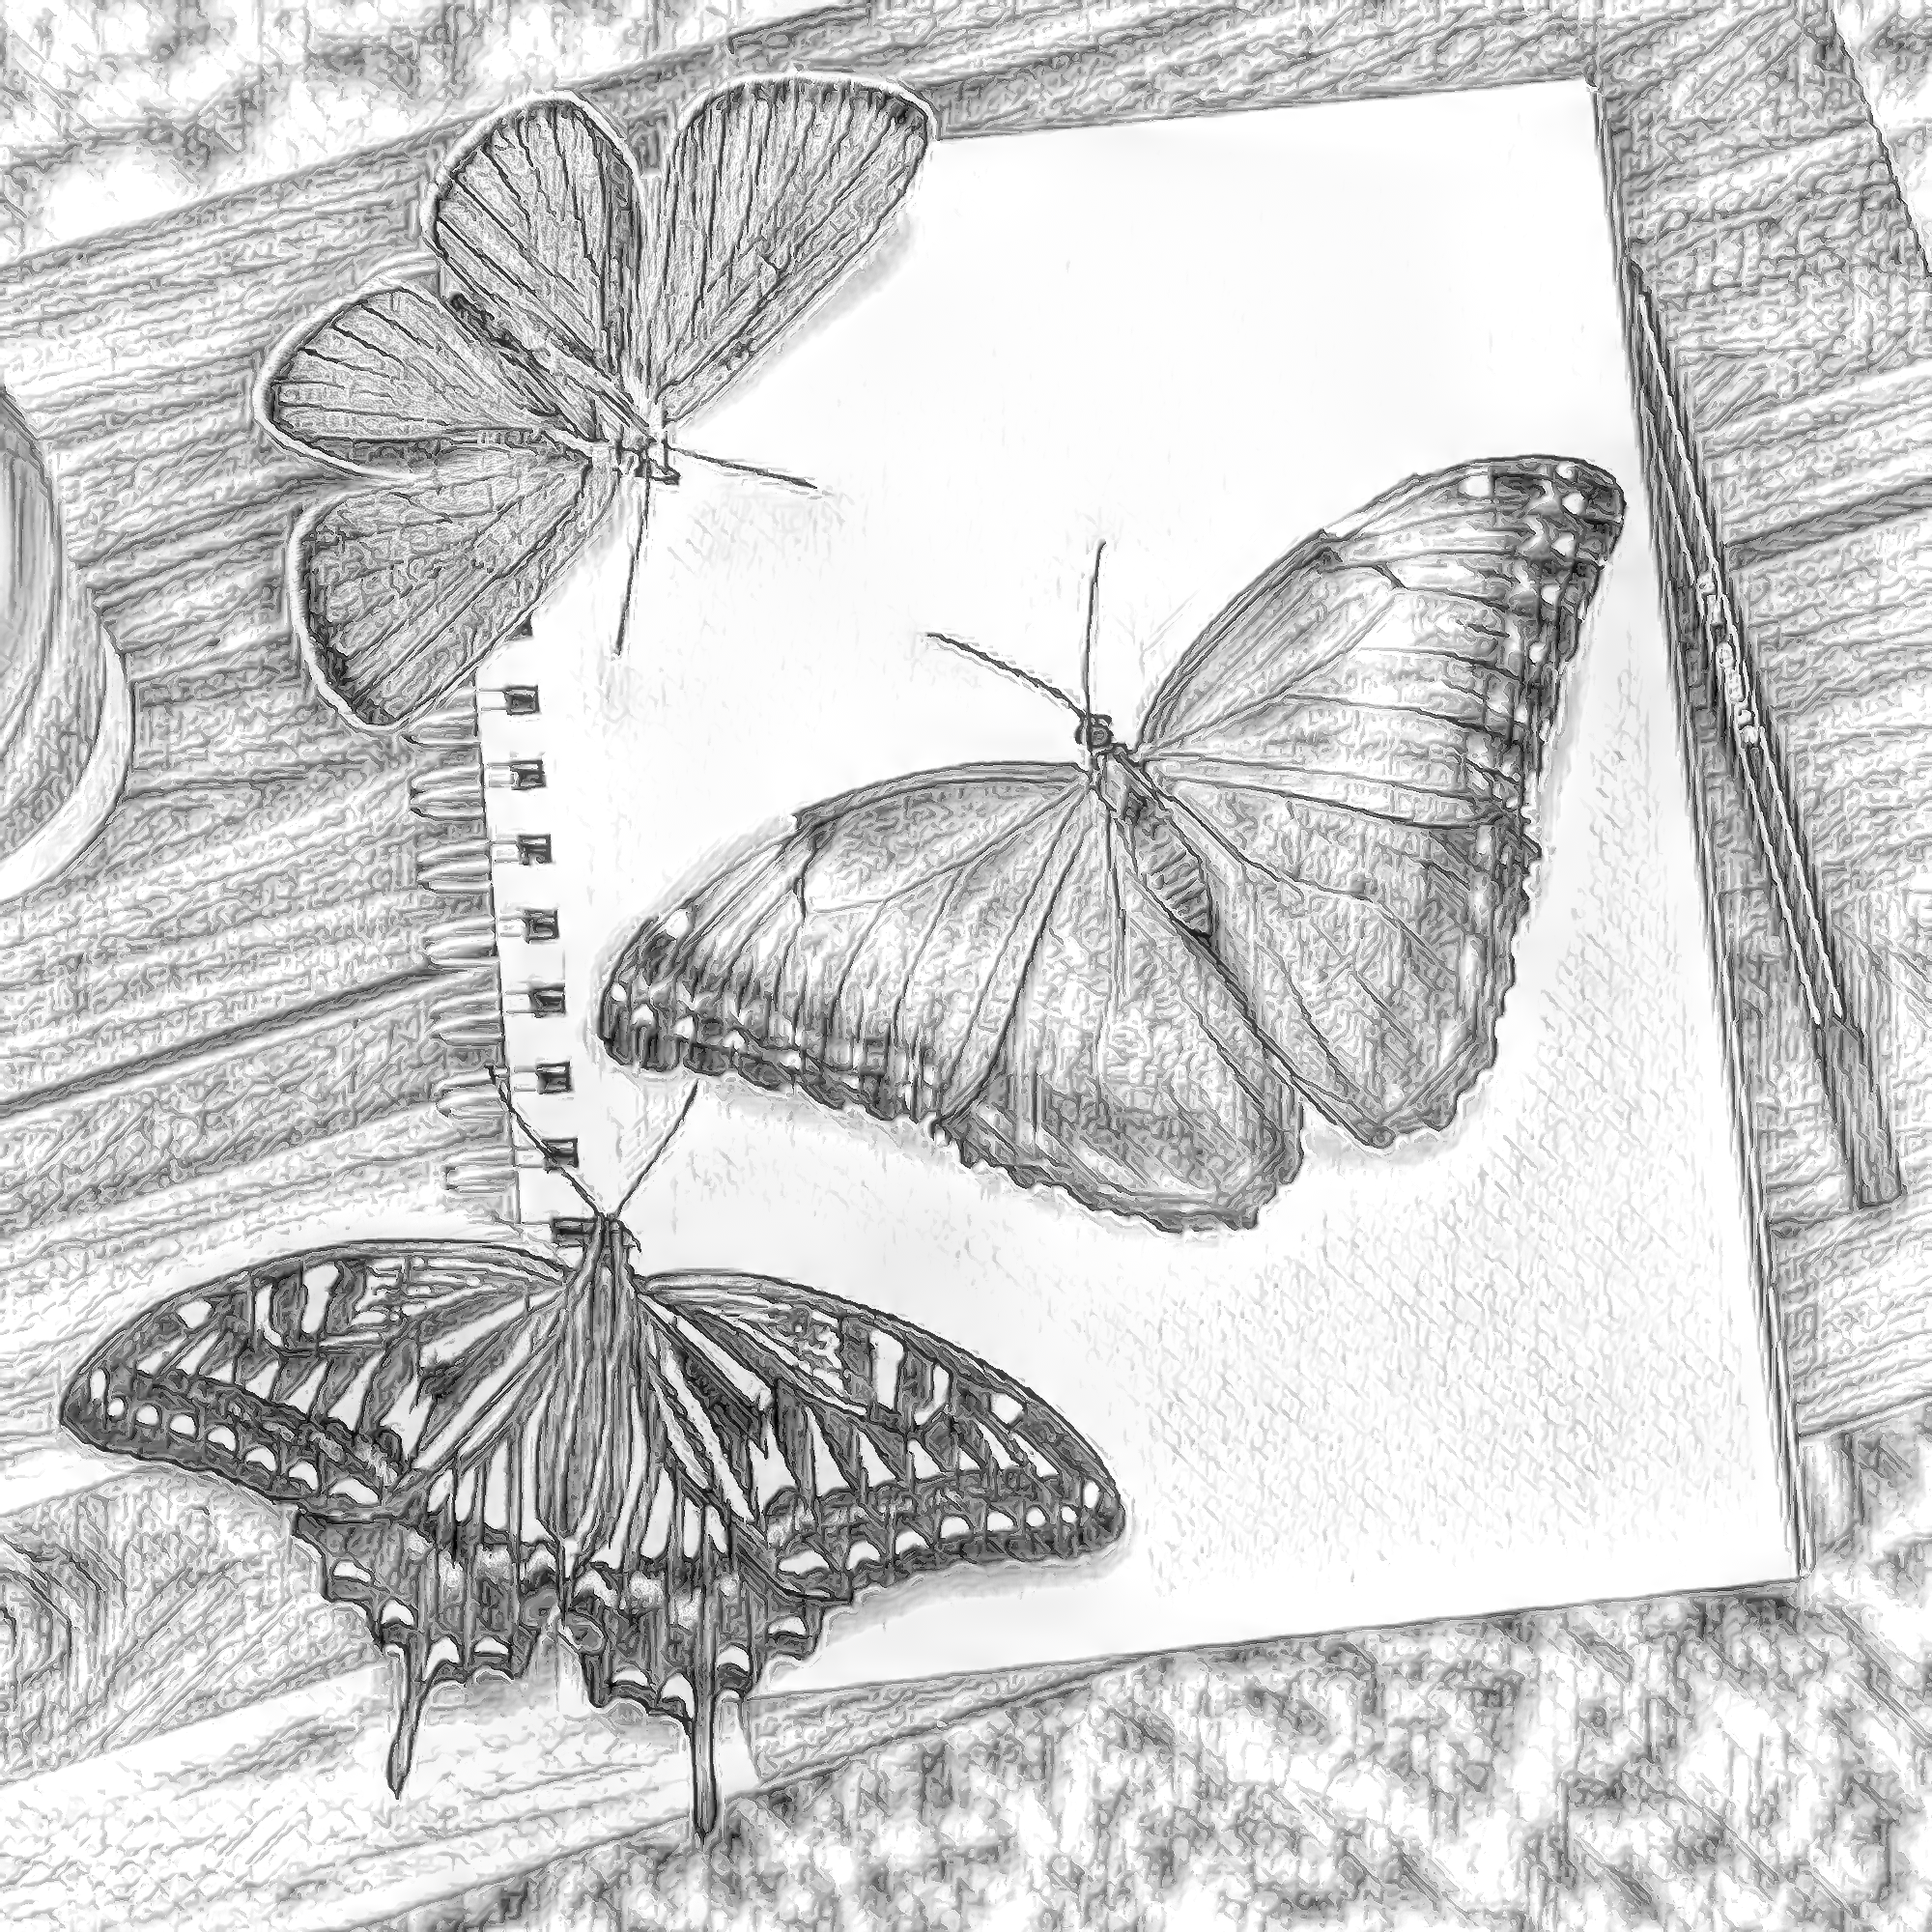 無料イラスト 背景画像素材 机の蝶とノートと色鉛筆風リアルなイラスト Free Illustlation くりえいてぃぶ